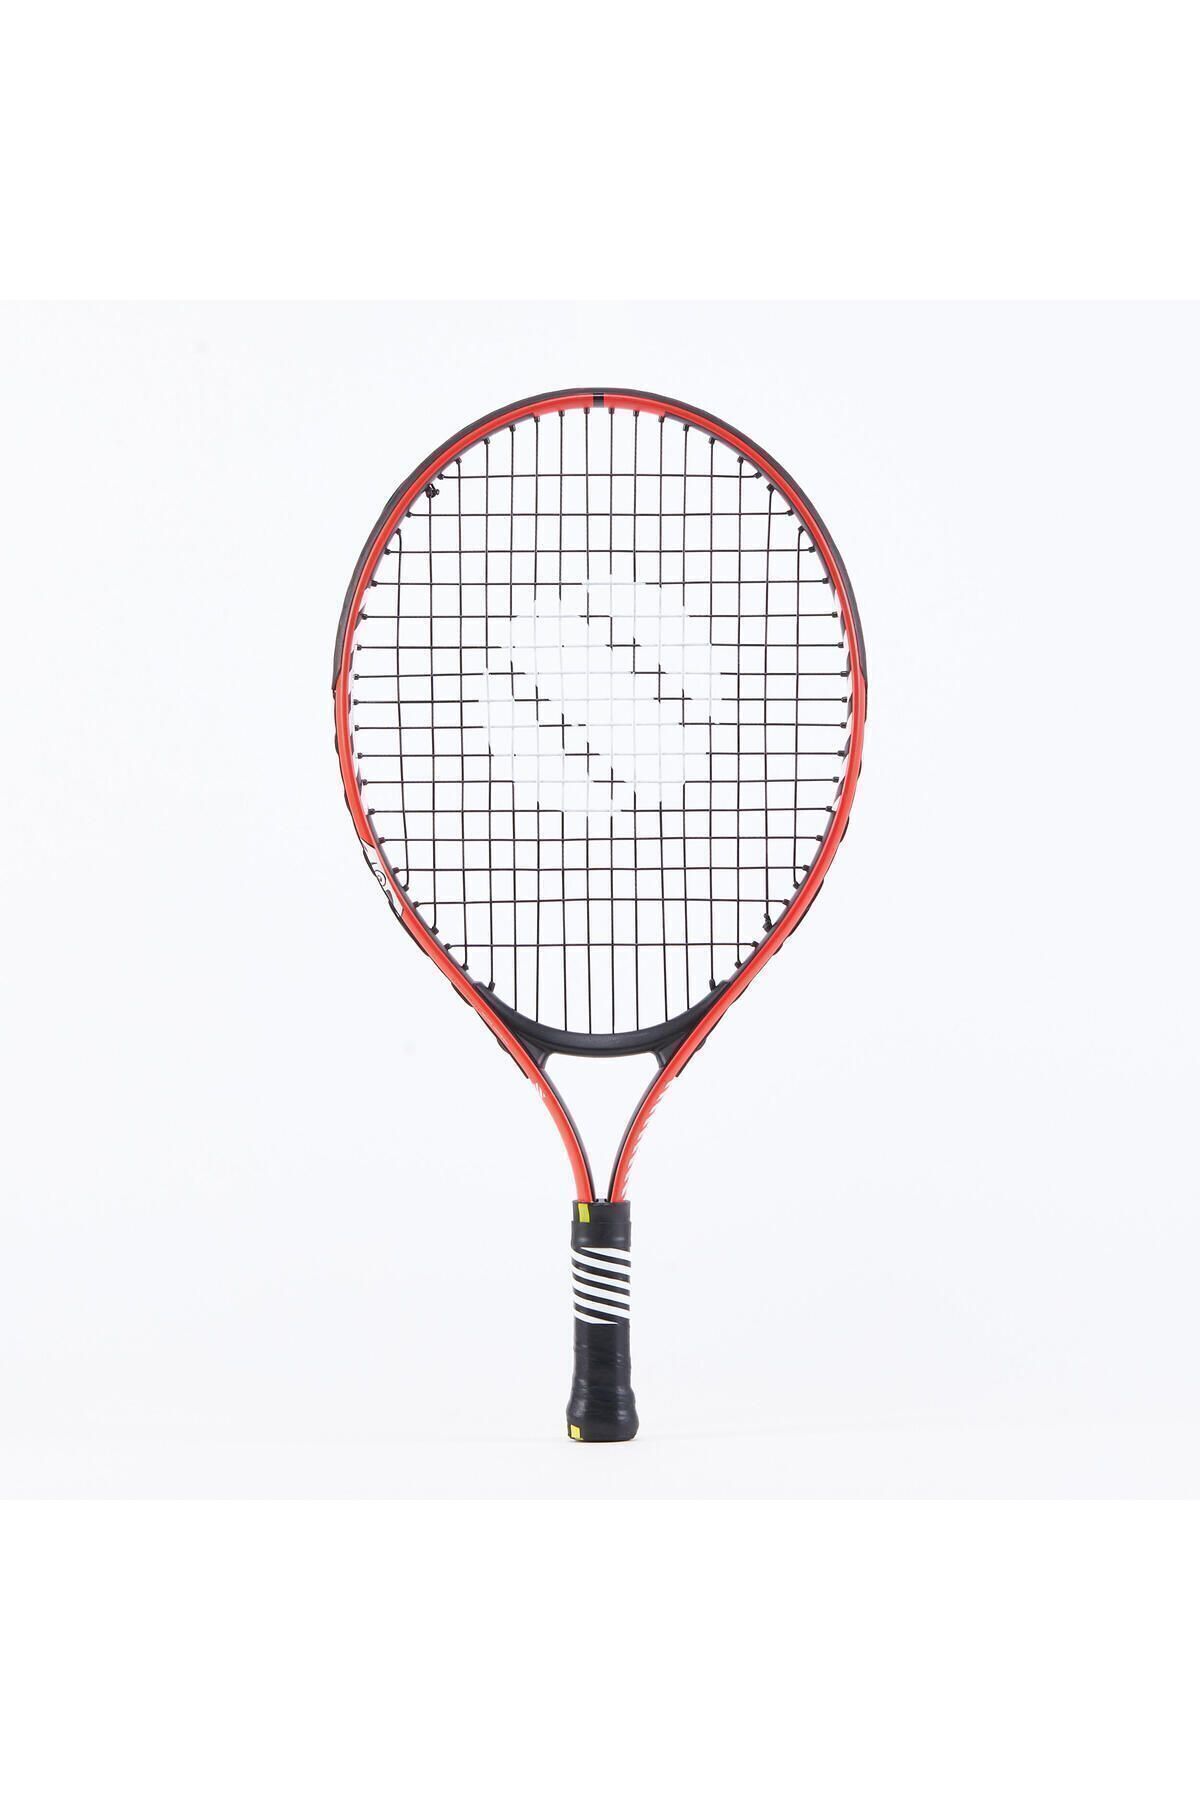 Decathlon Artengo Çocuk Tenis Raketi - 19 Inç - Kırmızı - Tr130